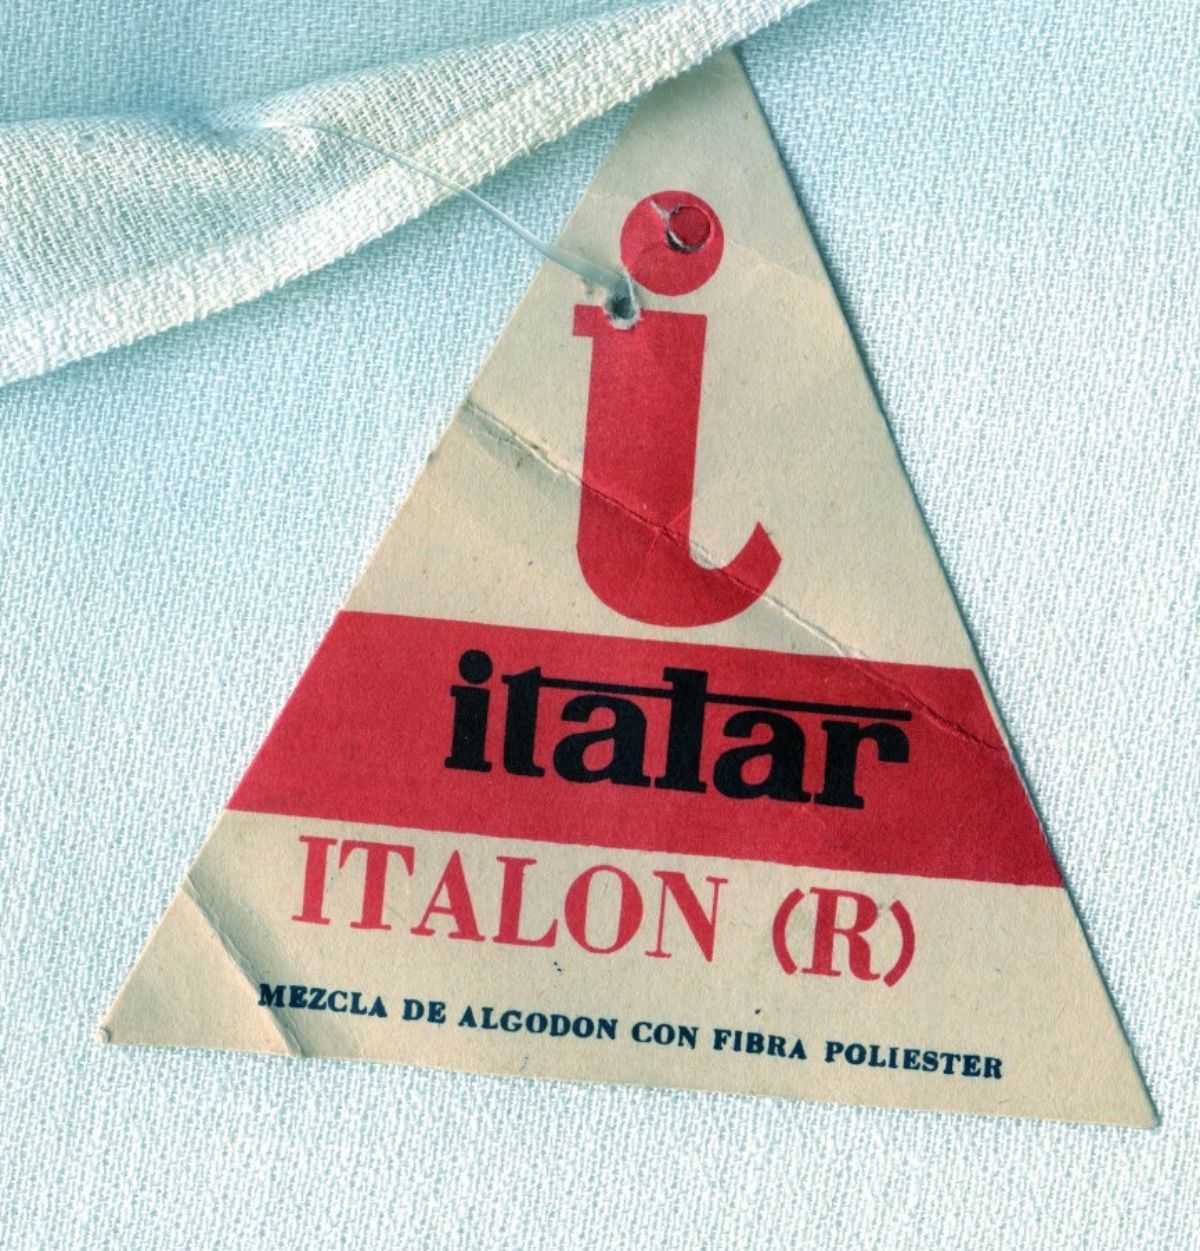 Italar, la fábrica textil de Hurlingham que fue crucial para el crecimiento de la ciudad